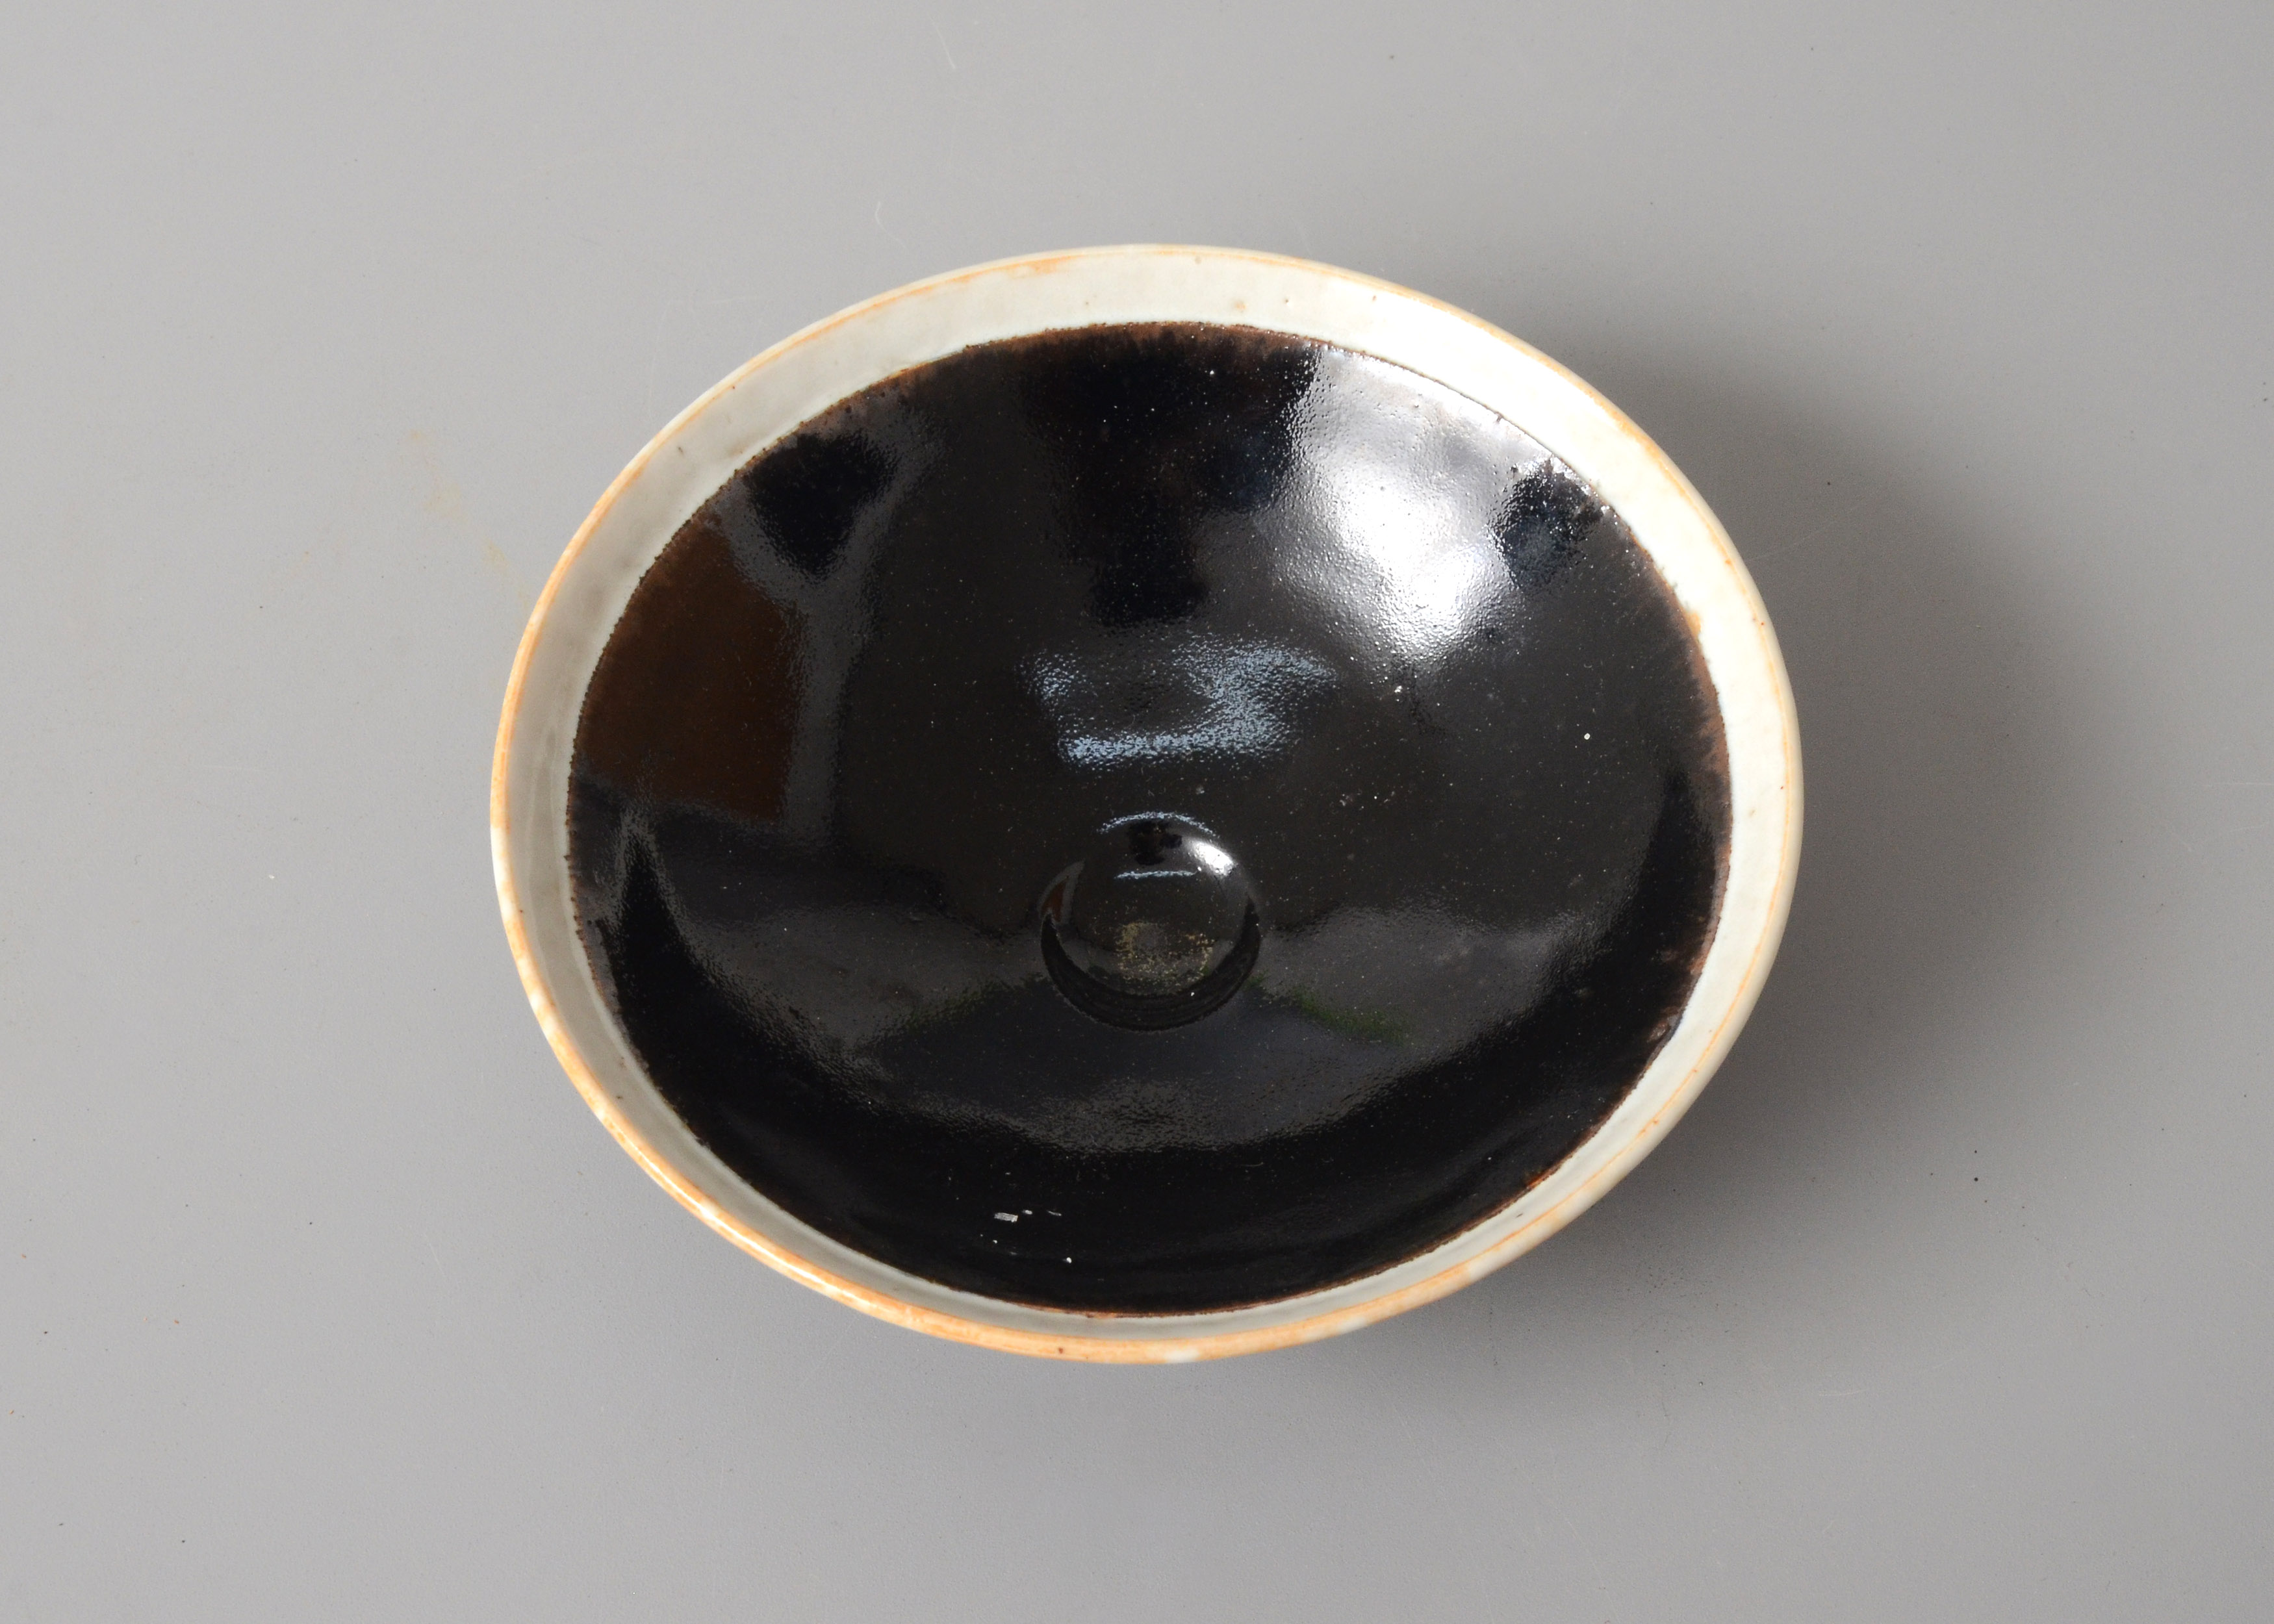 定窑黑釉瓷器釉面特征图片